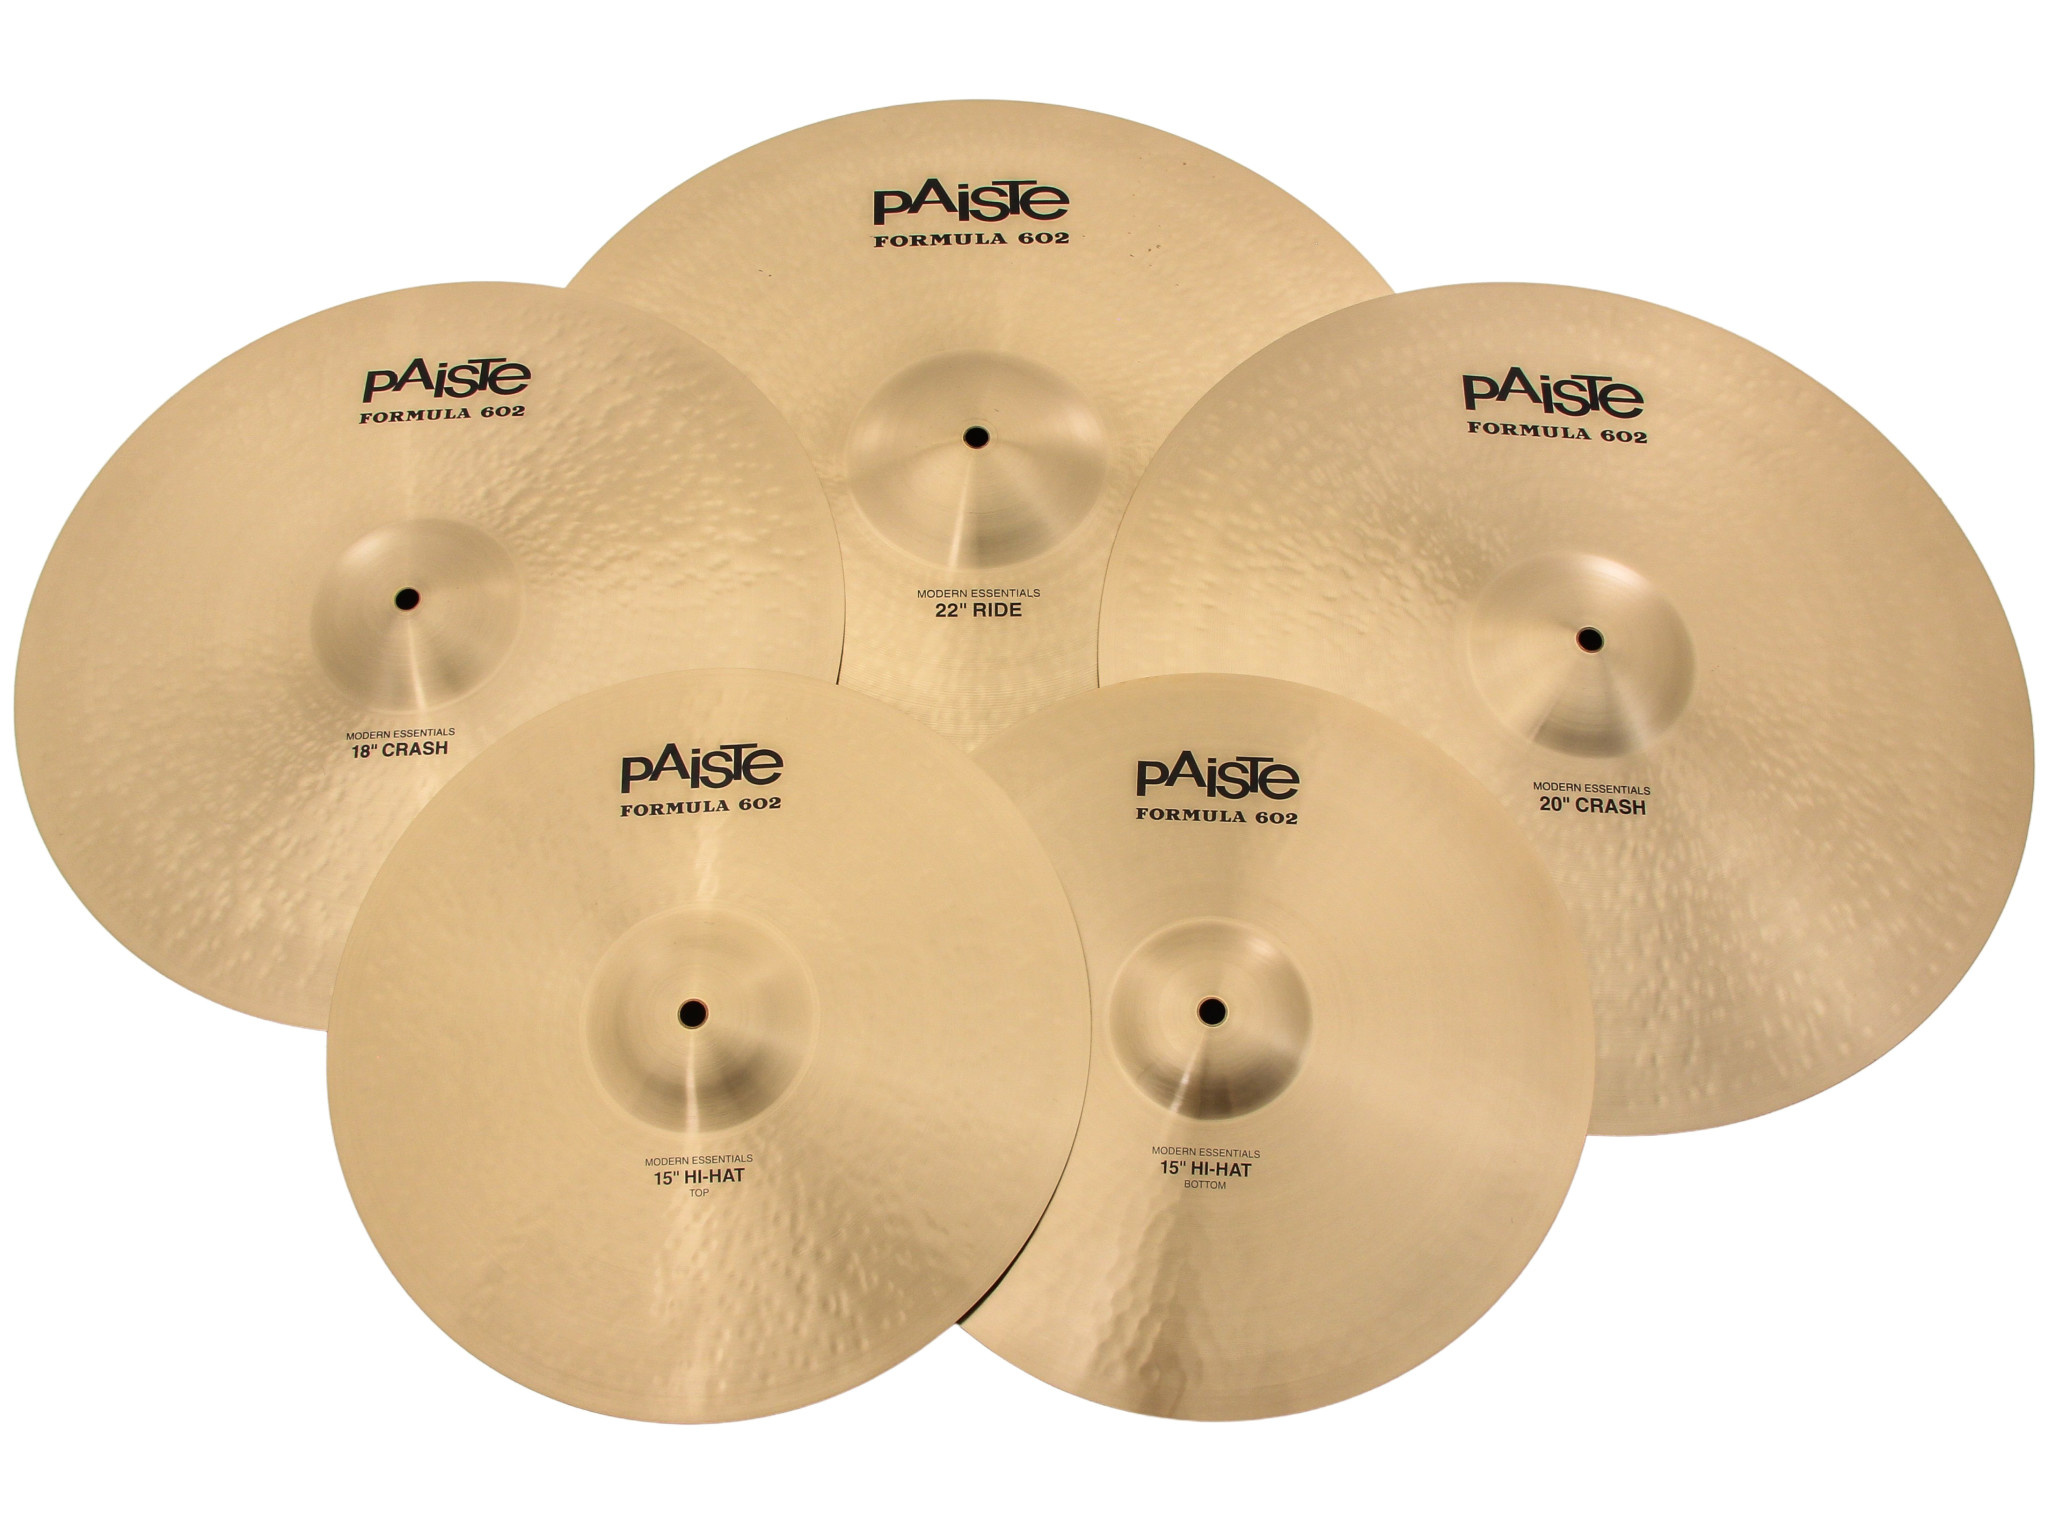 Paiste 602 Modern Essentials Series Cymbal Pack